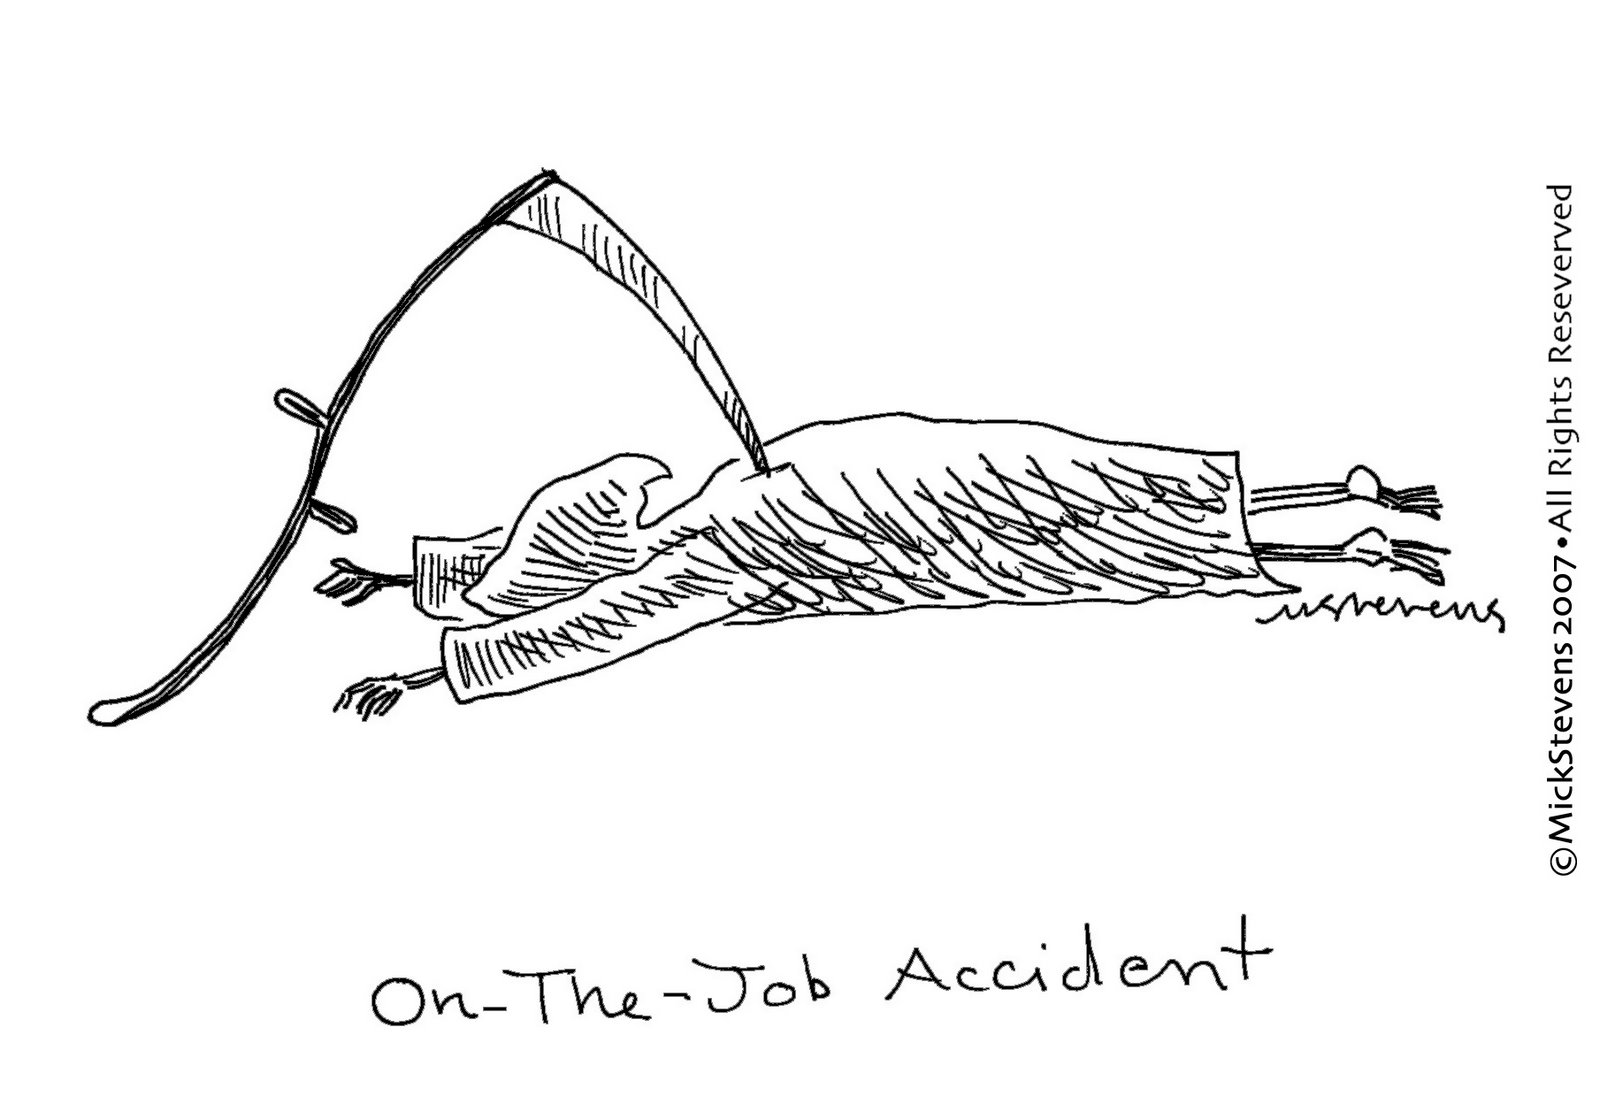 [OnTheJobAccident.jpg]